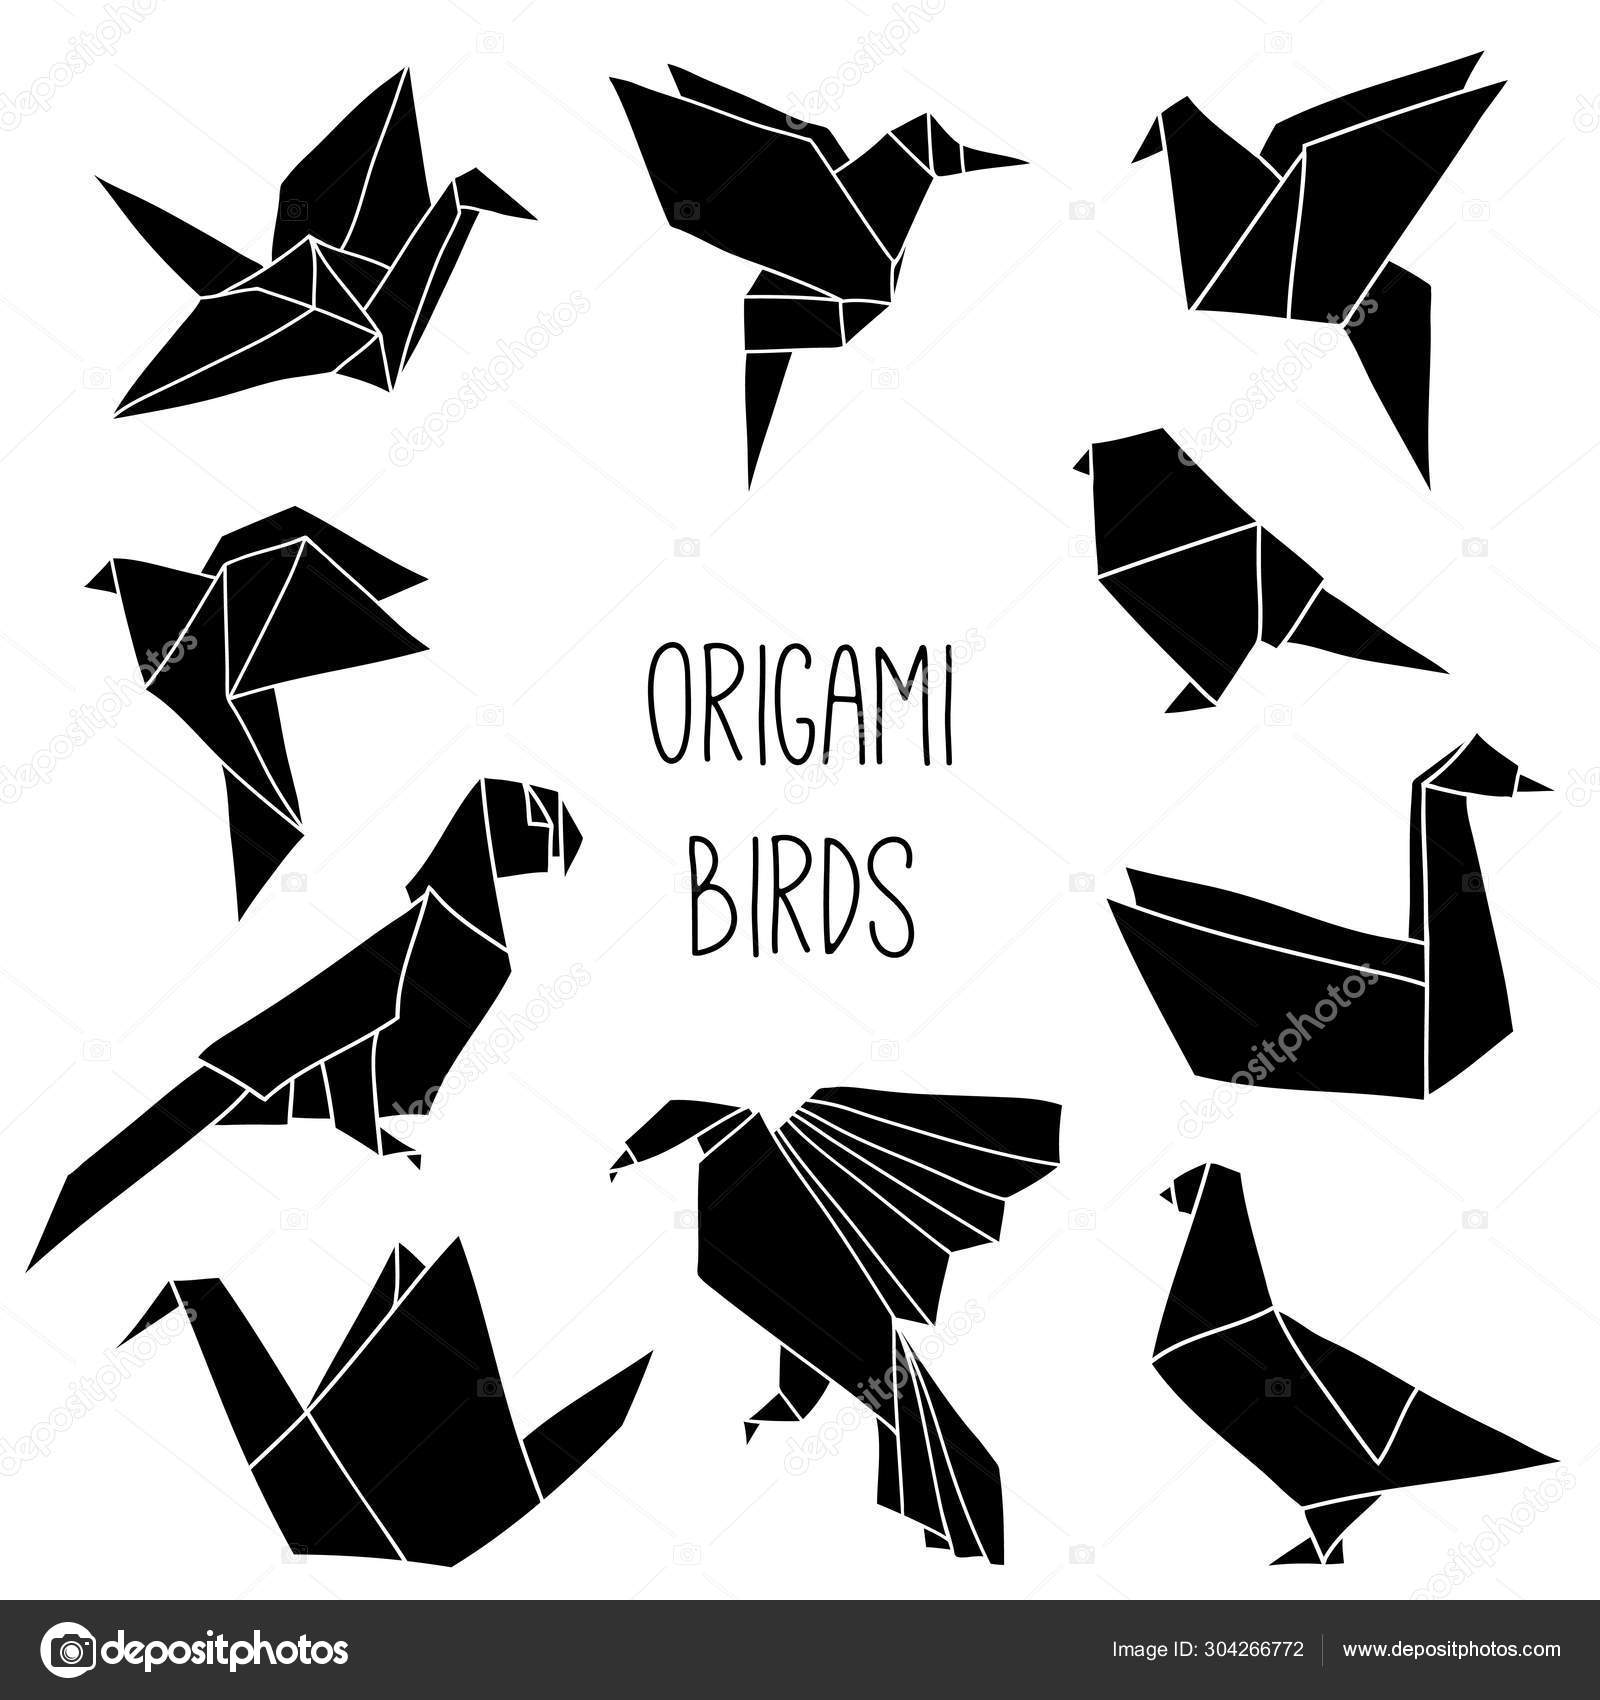 desenho vetorial simples desenhado à mão com contorno preto. aves